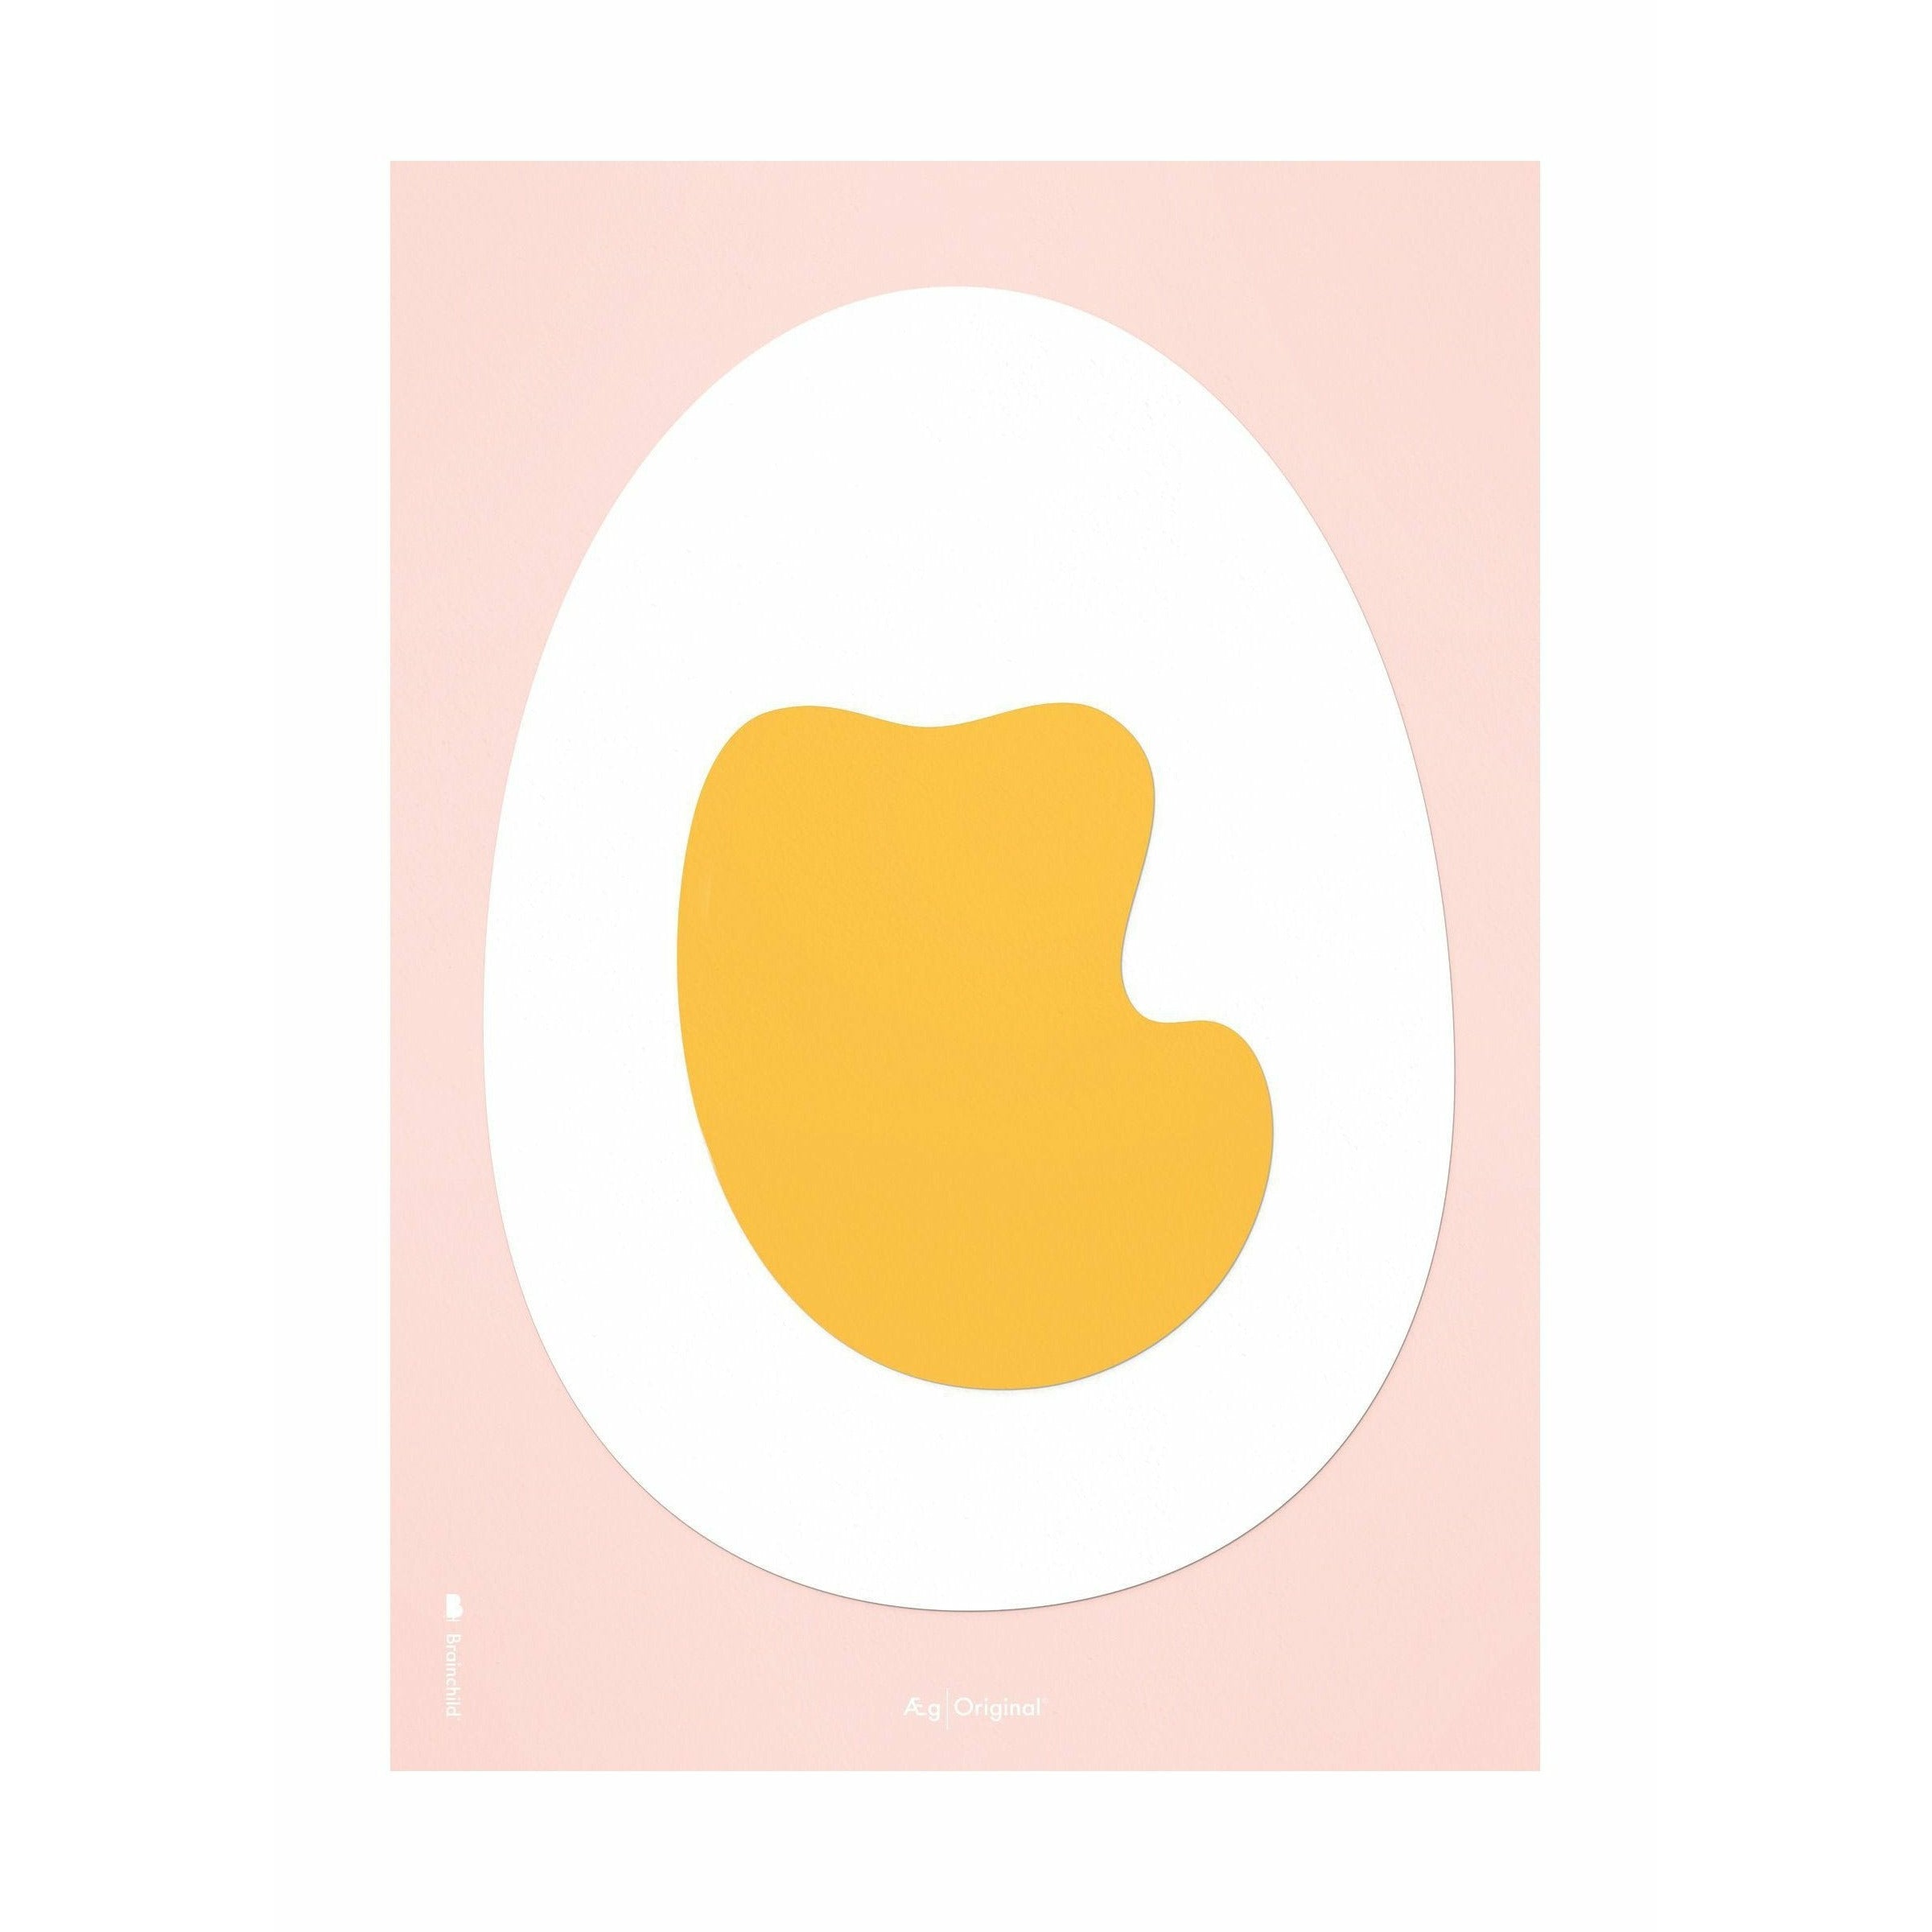 Plakát z vaječného papíru s vaječným papírem bez rámu A5, růžové pozadí